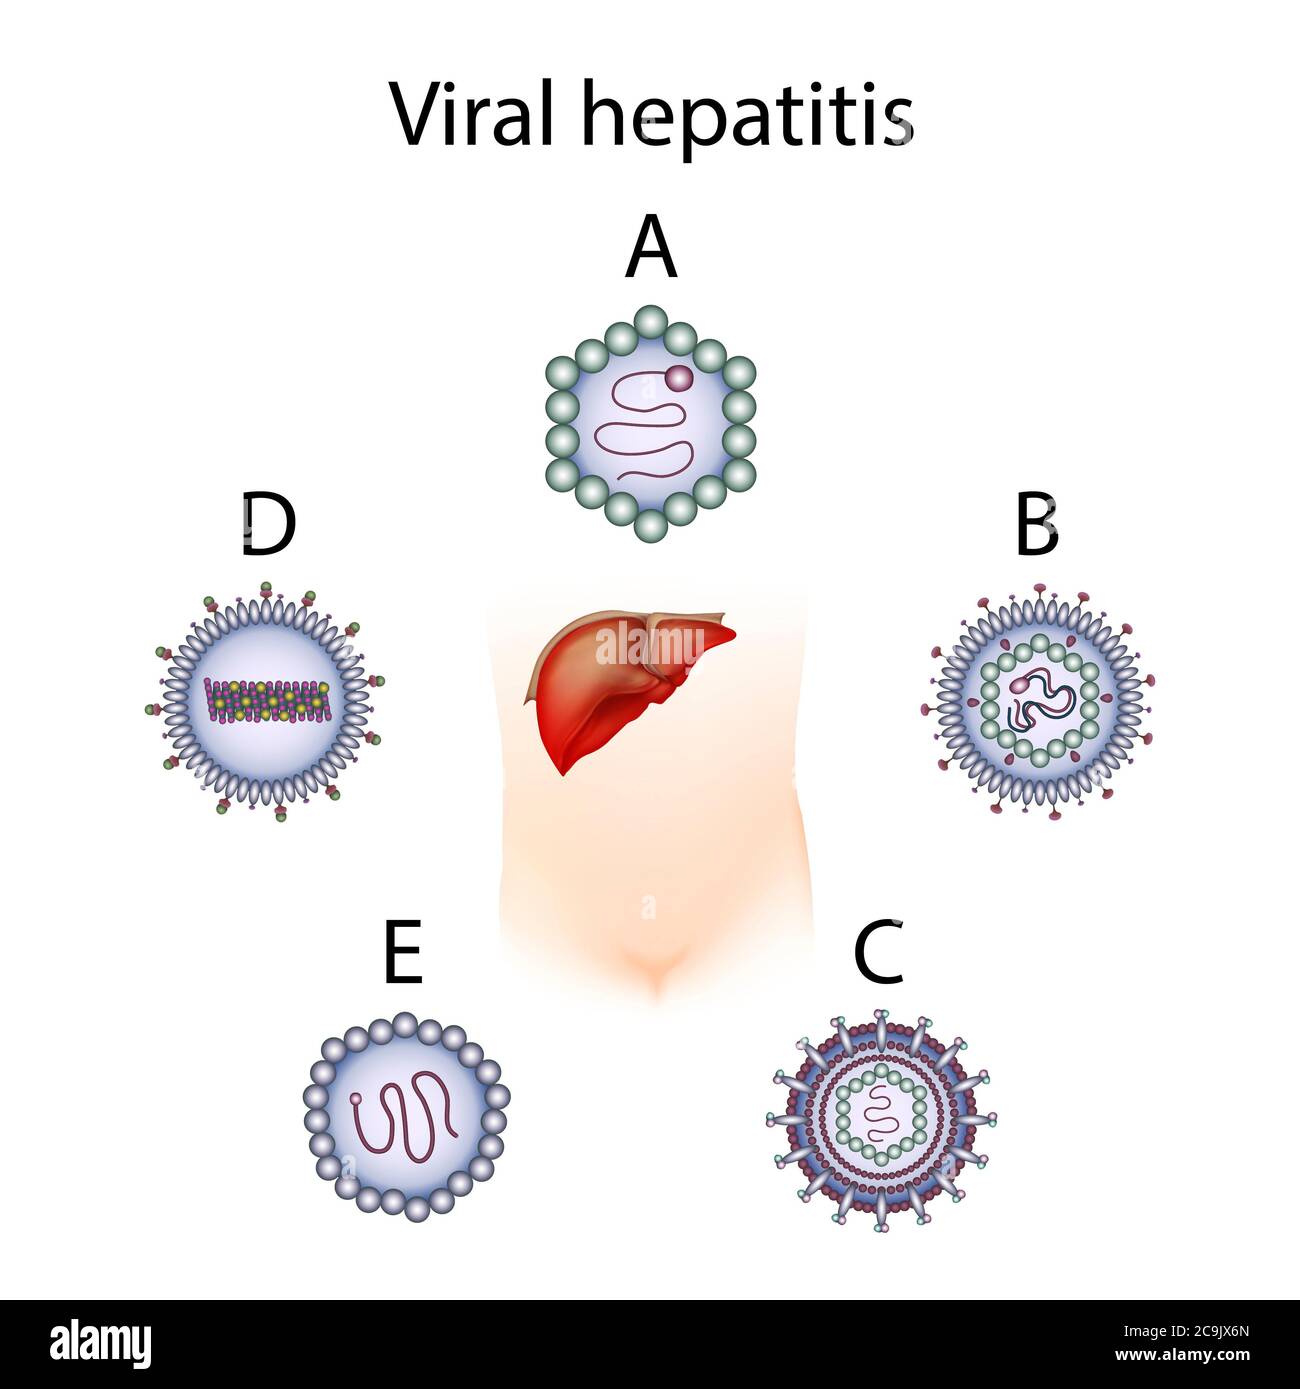 История вирусных гепатитов. Вирусные гепатиты. Вирус гепатита в.